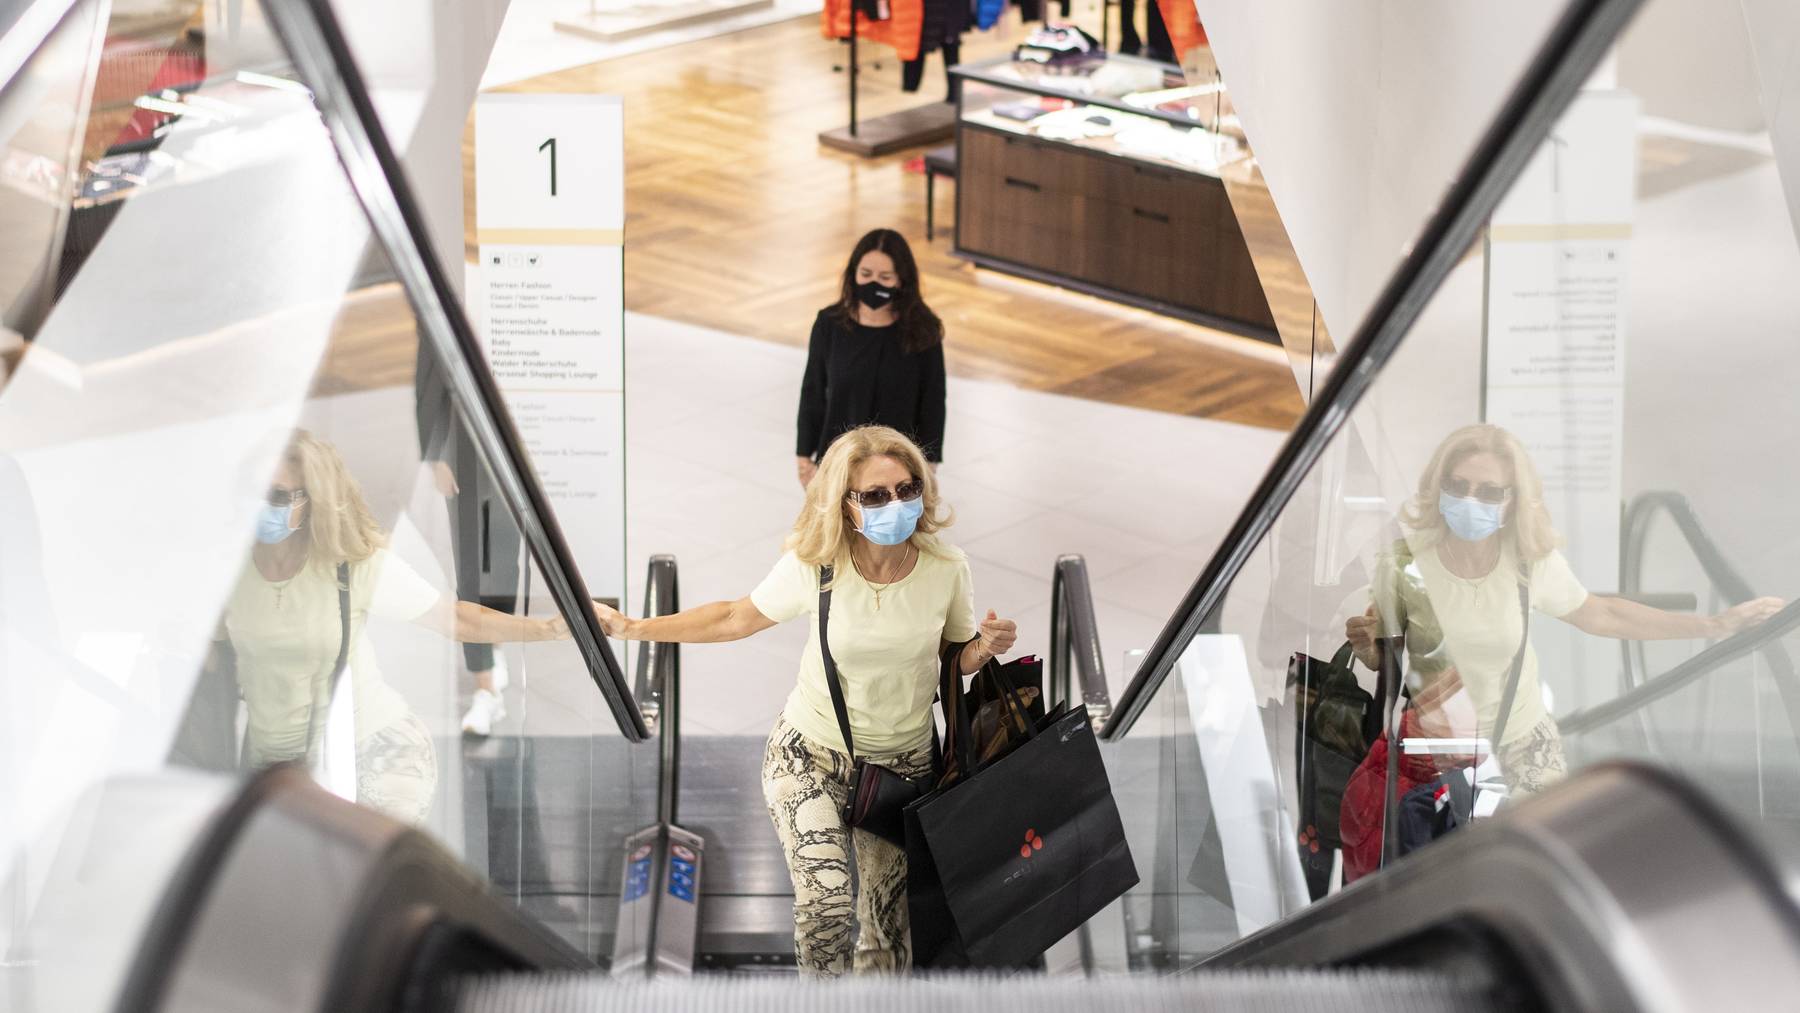 Zum Beispiel Zürich: Hier gilt bereits eine Maskentragepflcht beim Einkaufen. In einer Umfrage stützt nun die Bevölkerung diese Form von Massnahme.